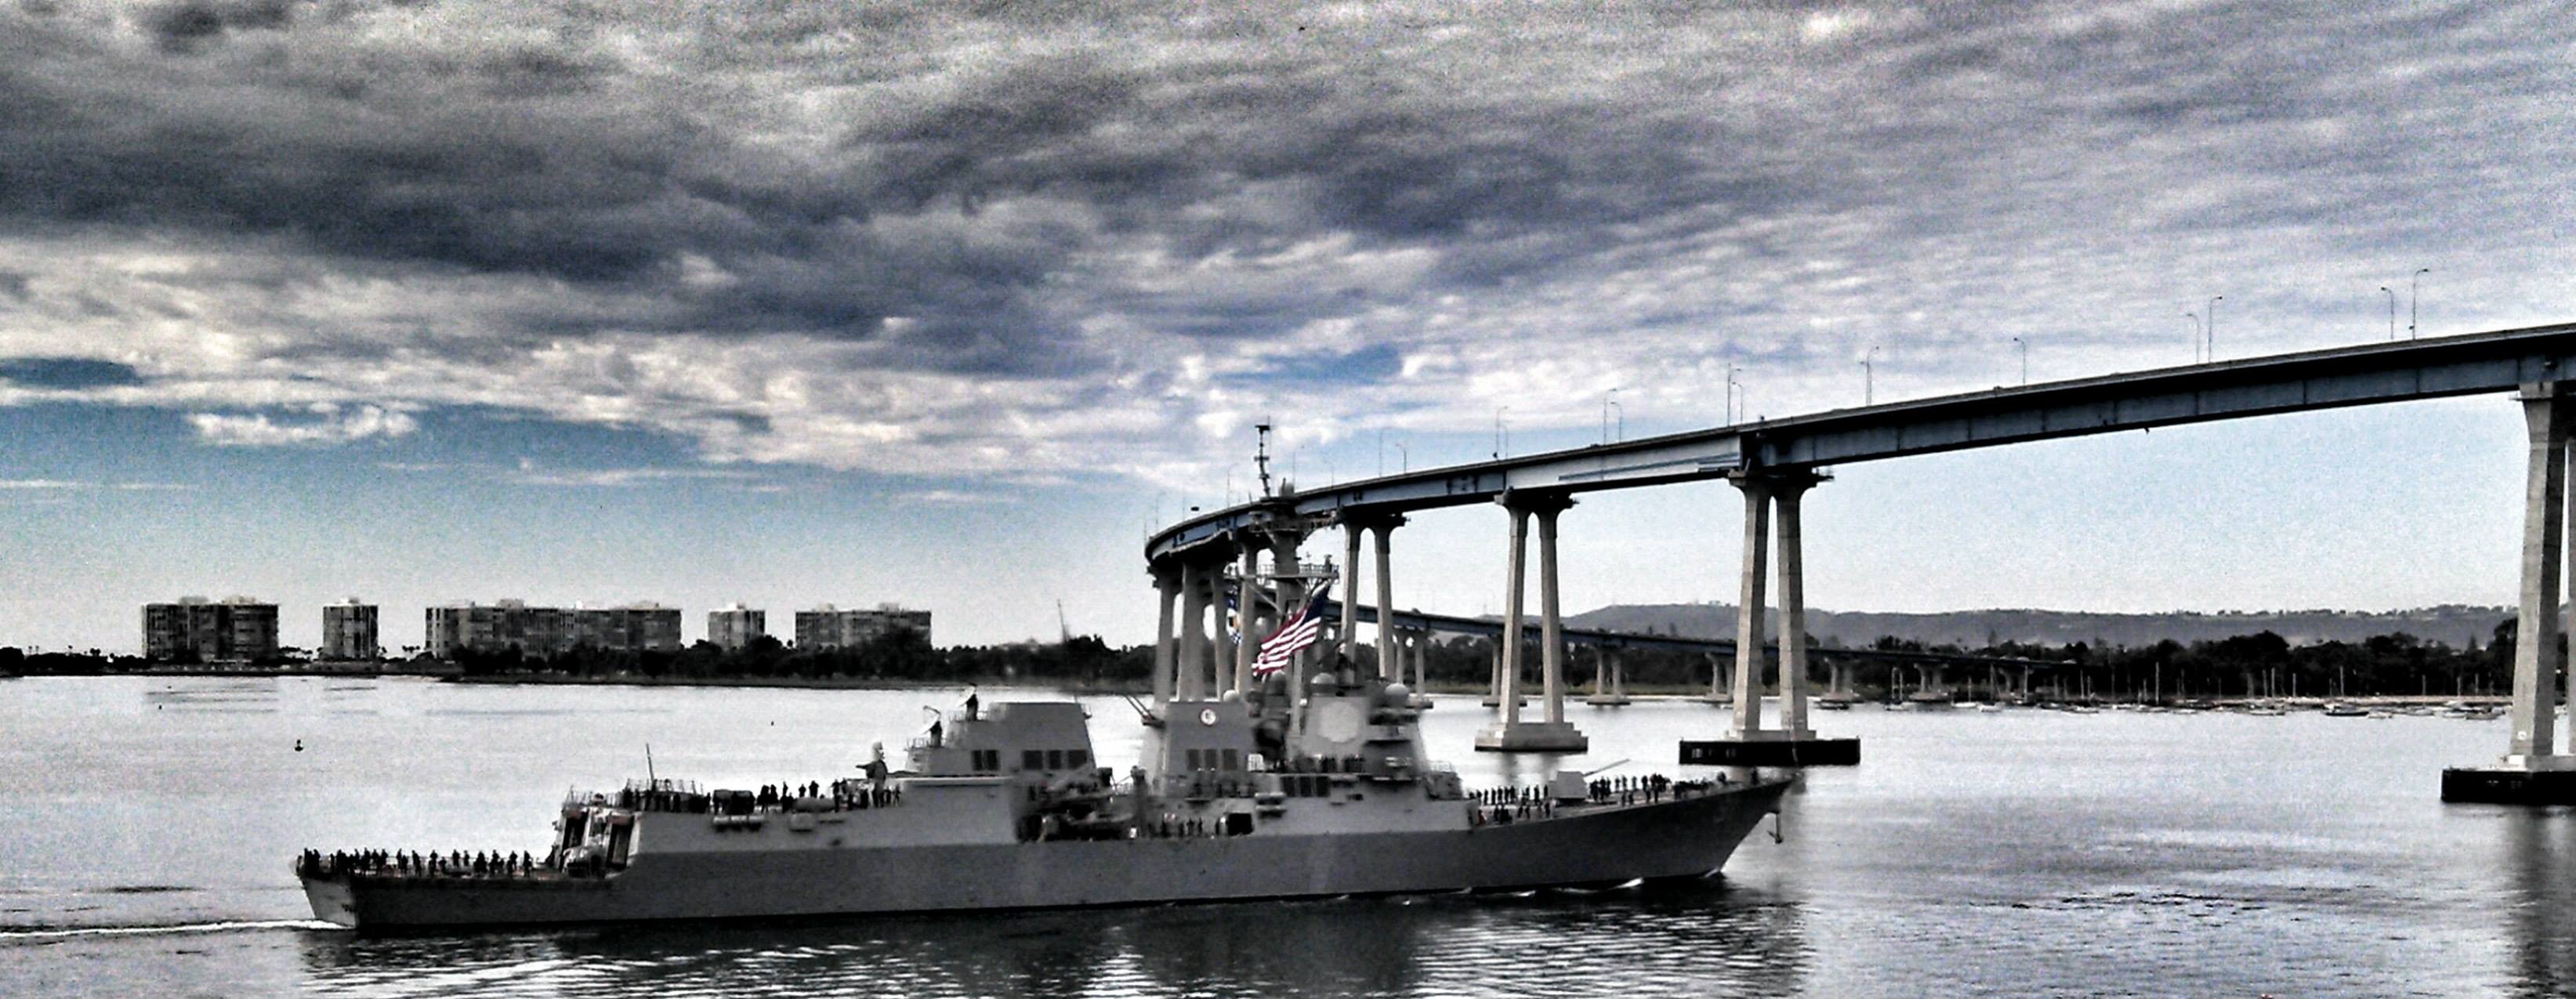 USS PINCKNEY DDG-91 Auslaufen San Diego 07.01.2014 Bild: USS PINCKNEY Facebook Page